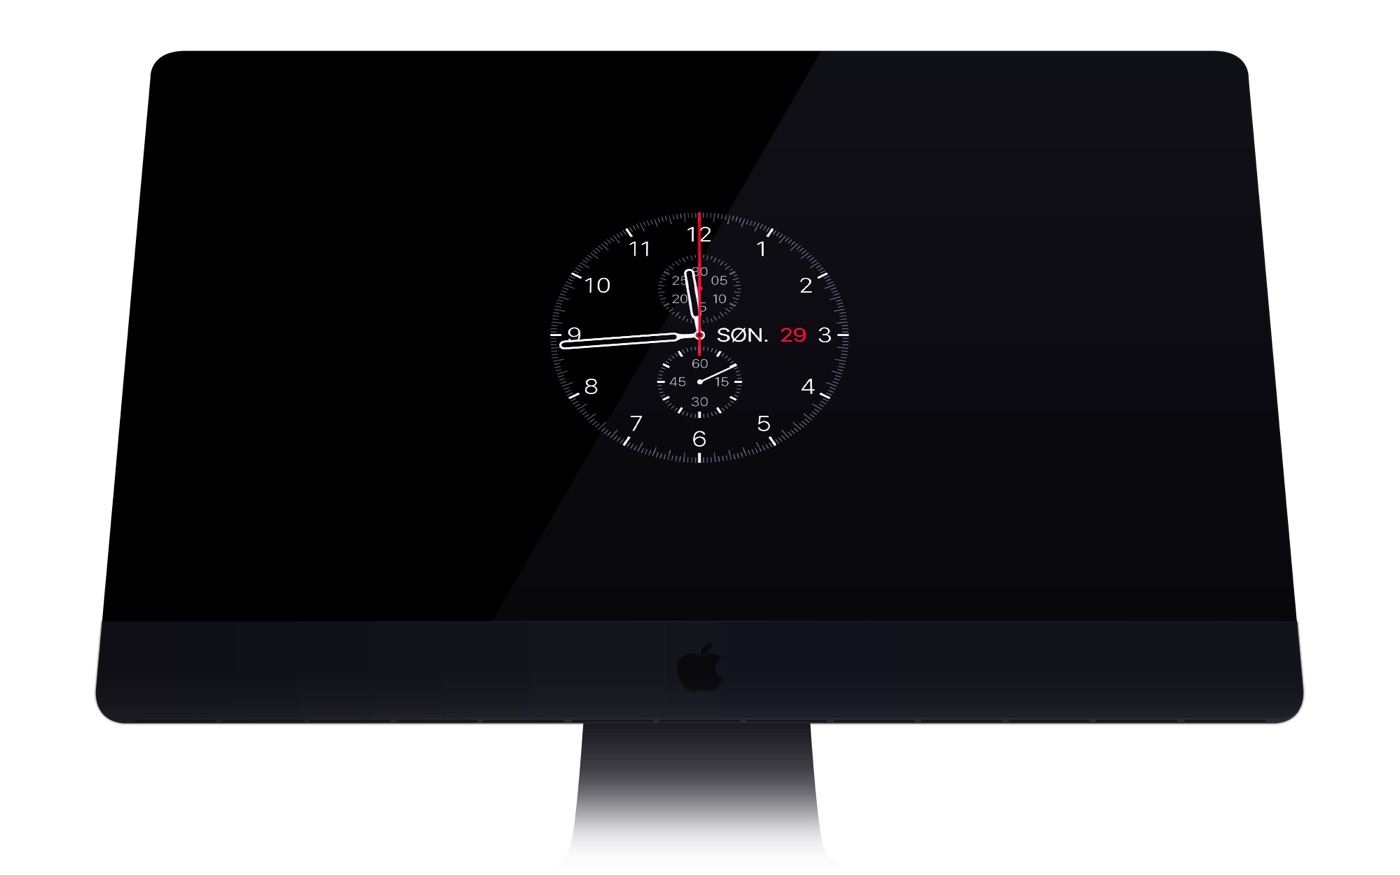 OS X向け｢Apple Watch｣風スクリーンセーバー｢Apple Watch Screensaver｣がアップデート ｰ Retinaディスプレイをサポート & 新たな文字盤追加